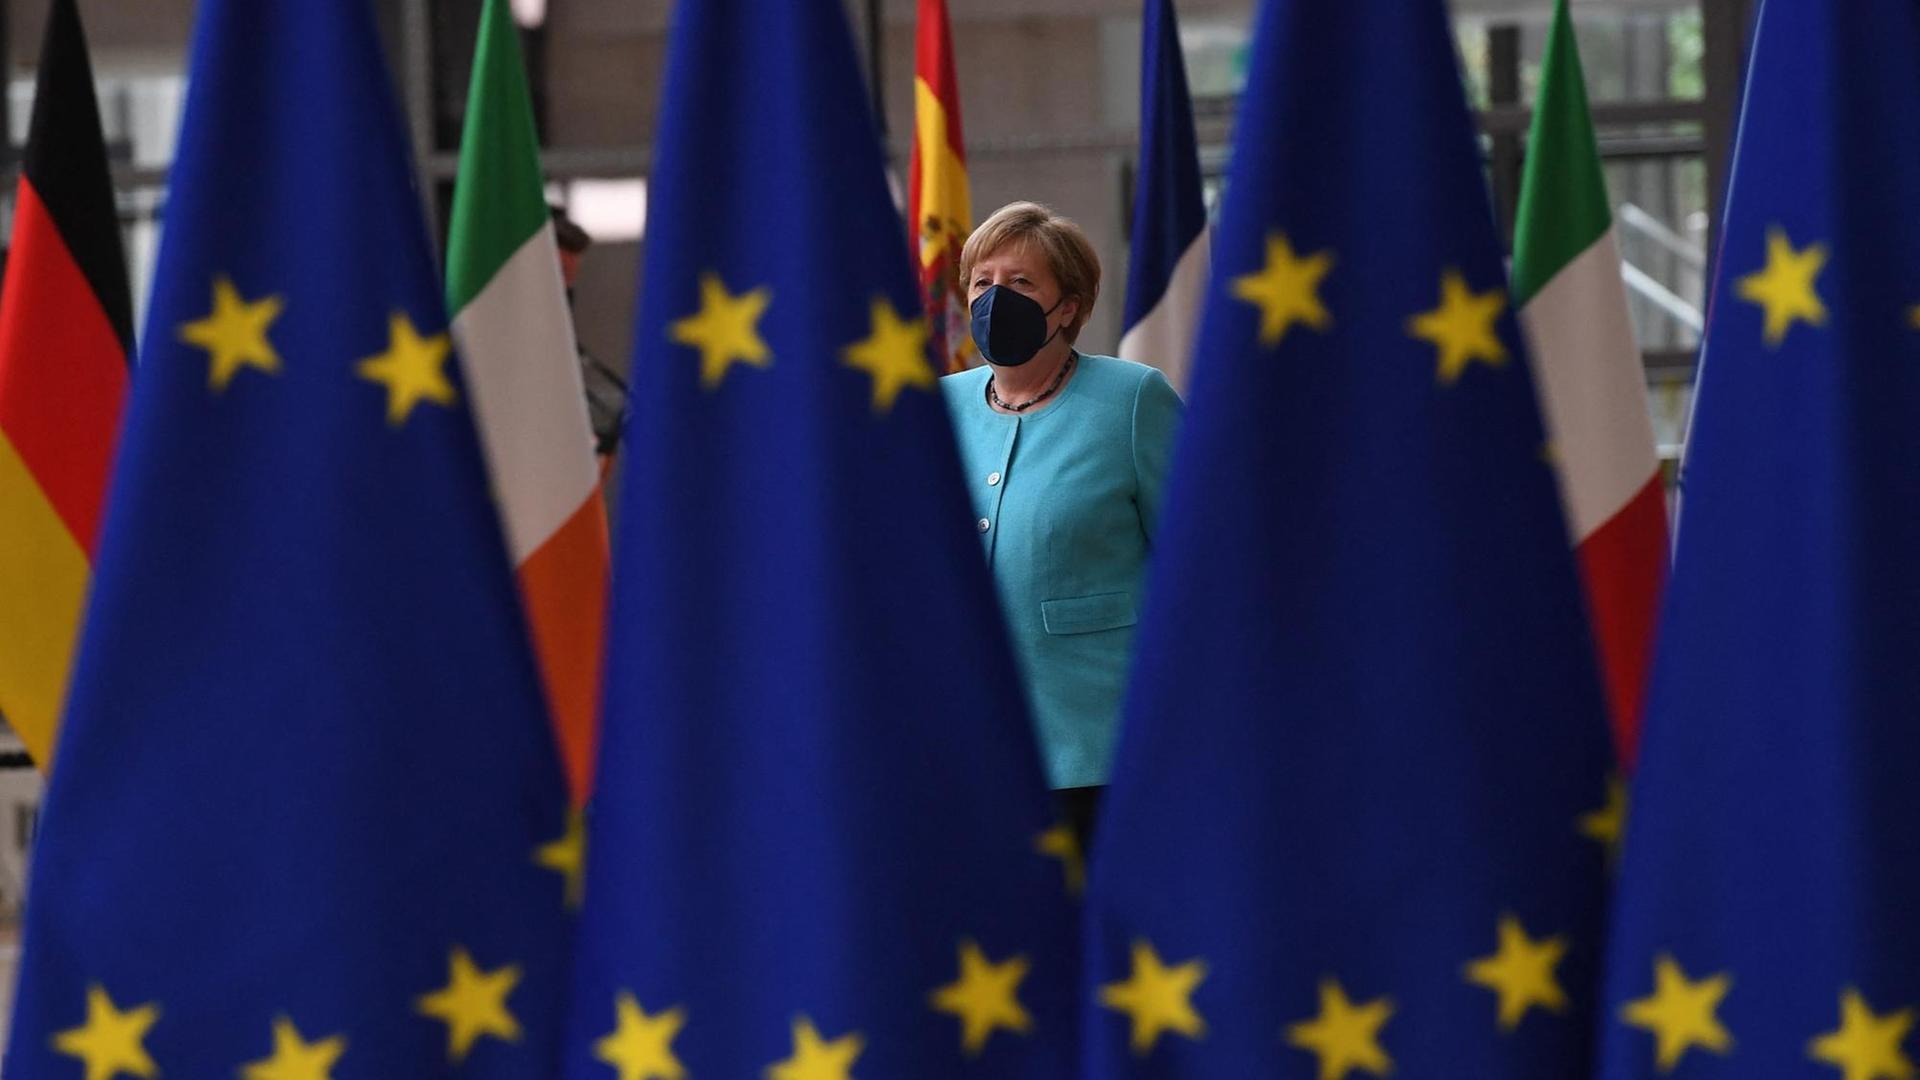 Kanzlerin Merkel geht hinter einer Reihe von EU-Flaggen entlang.